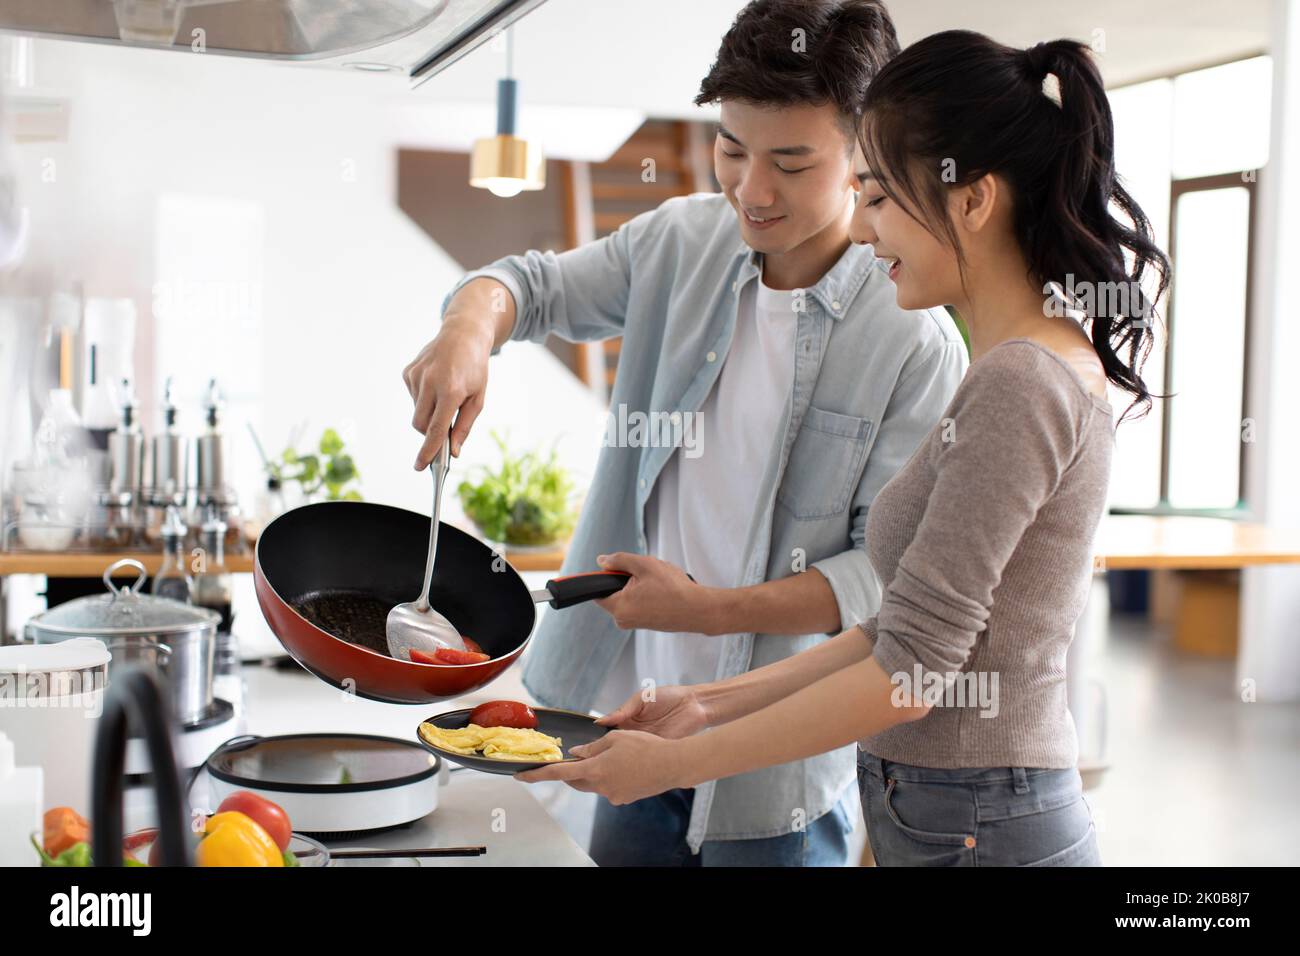 Glückliche junge chinesische paar in Küche Stockfoto